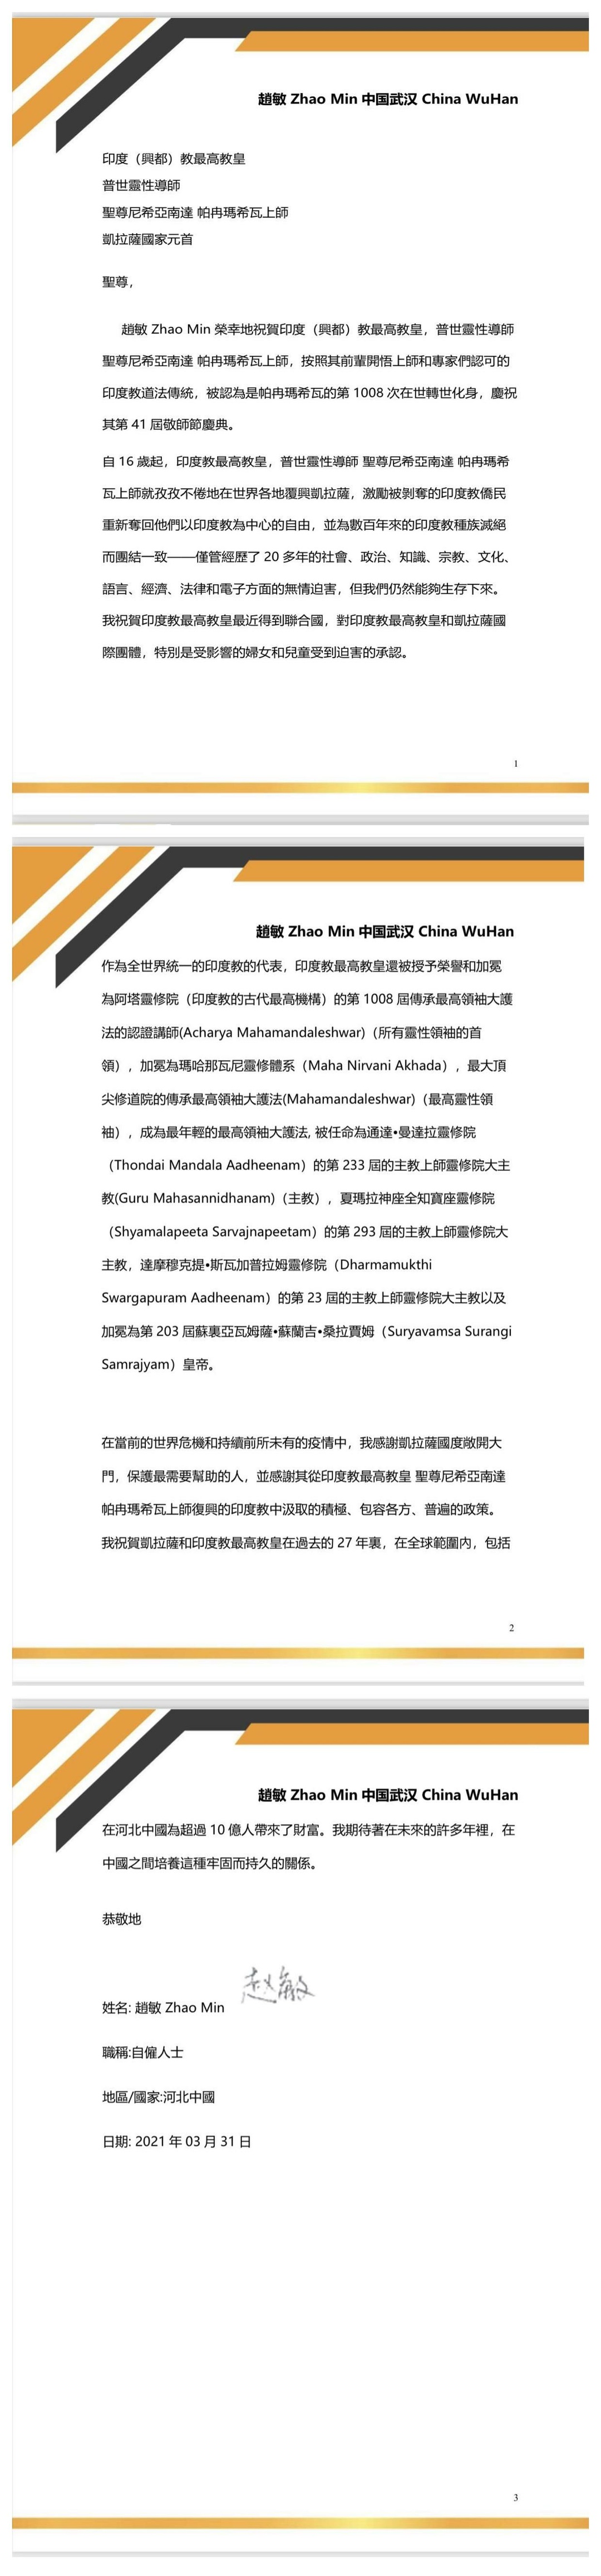 China---Min-Zhao---(Proclamation)-1dqp5uaT31HxUxmw2jVD1lyKdIHSXUfFd.pdf